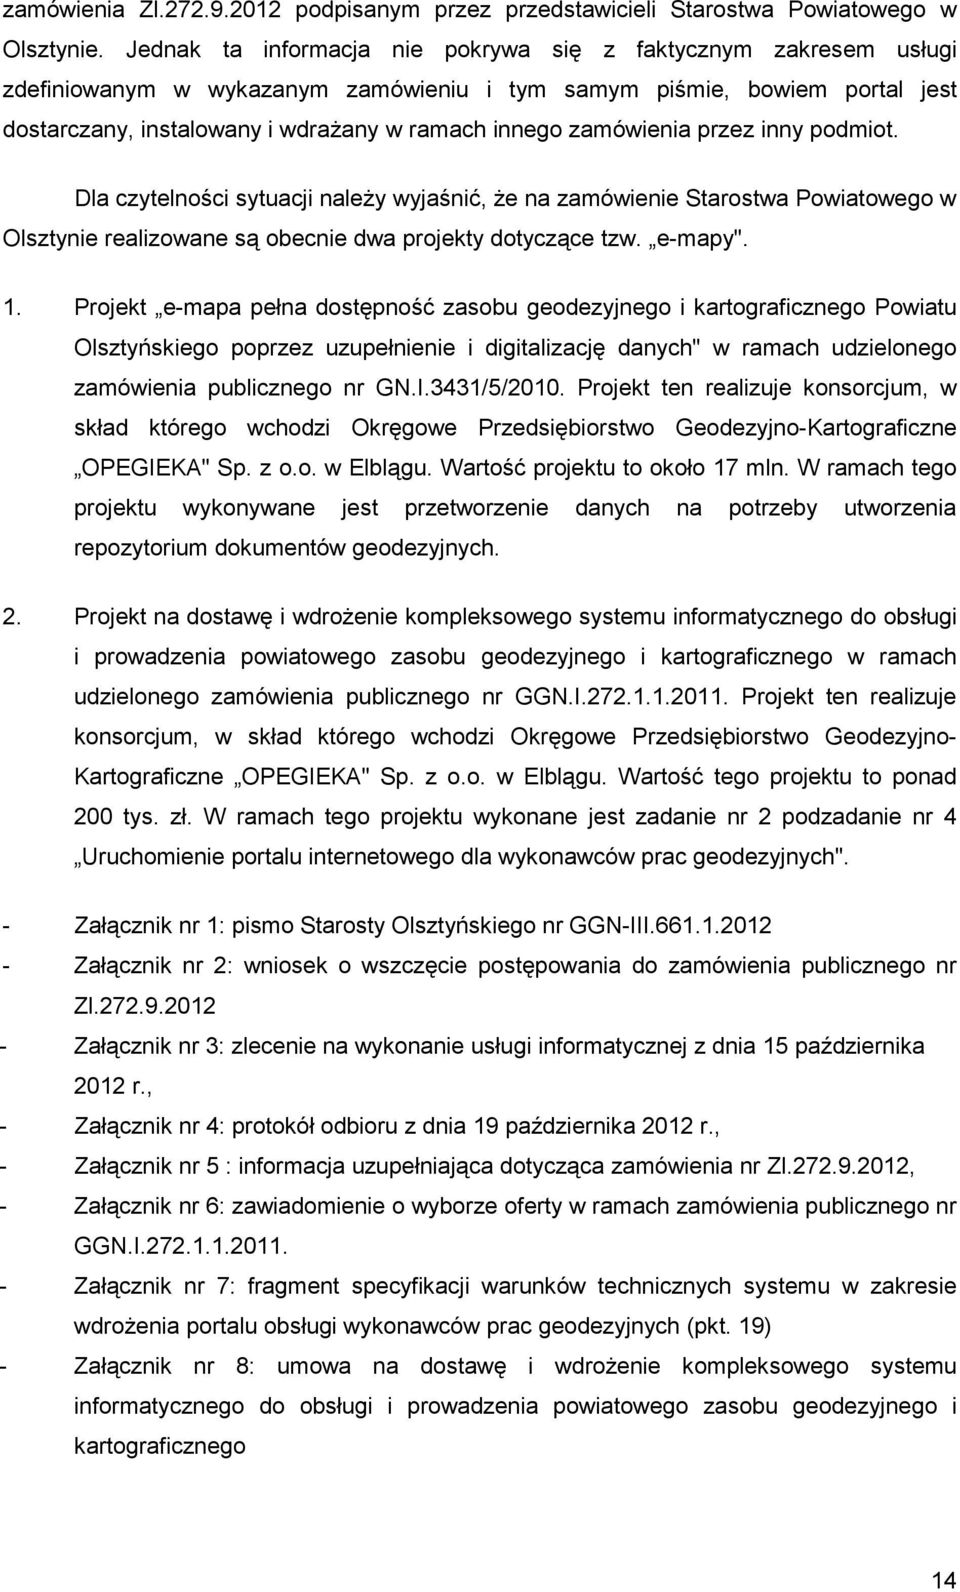 zamówienia przez inny podmiot. Dla czytelności sytuacji naleŝy wyjaśnić, Ŝe na zamówienie Starostwa Powiatowego w Olsztynie realizowane są obecnie dwa projekty dotyczące tzw. e-mapy". 1.